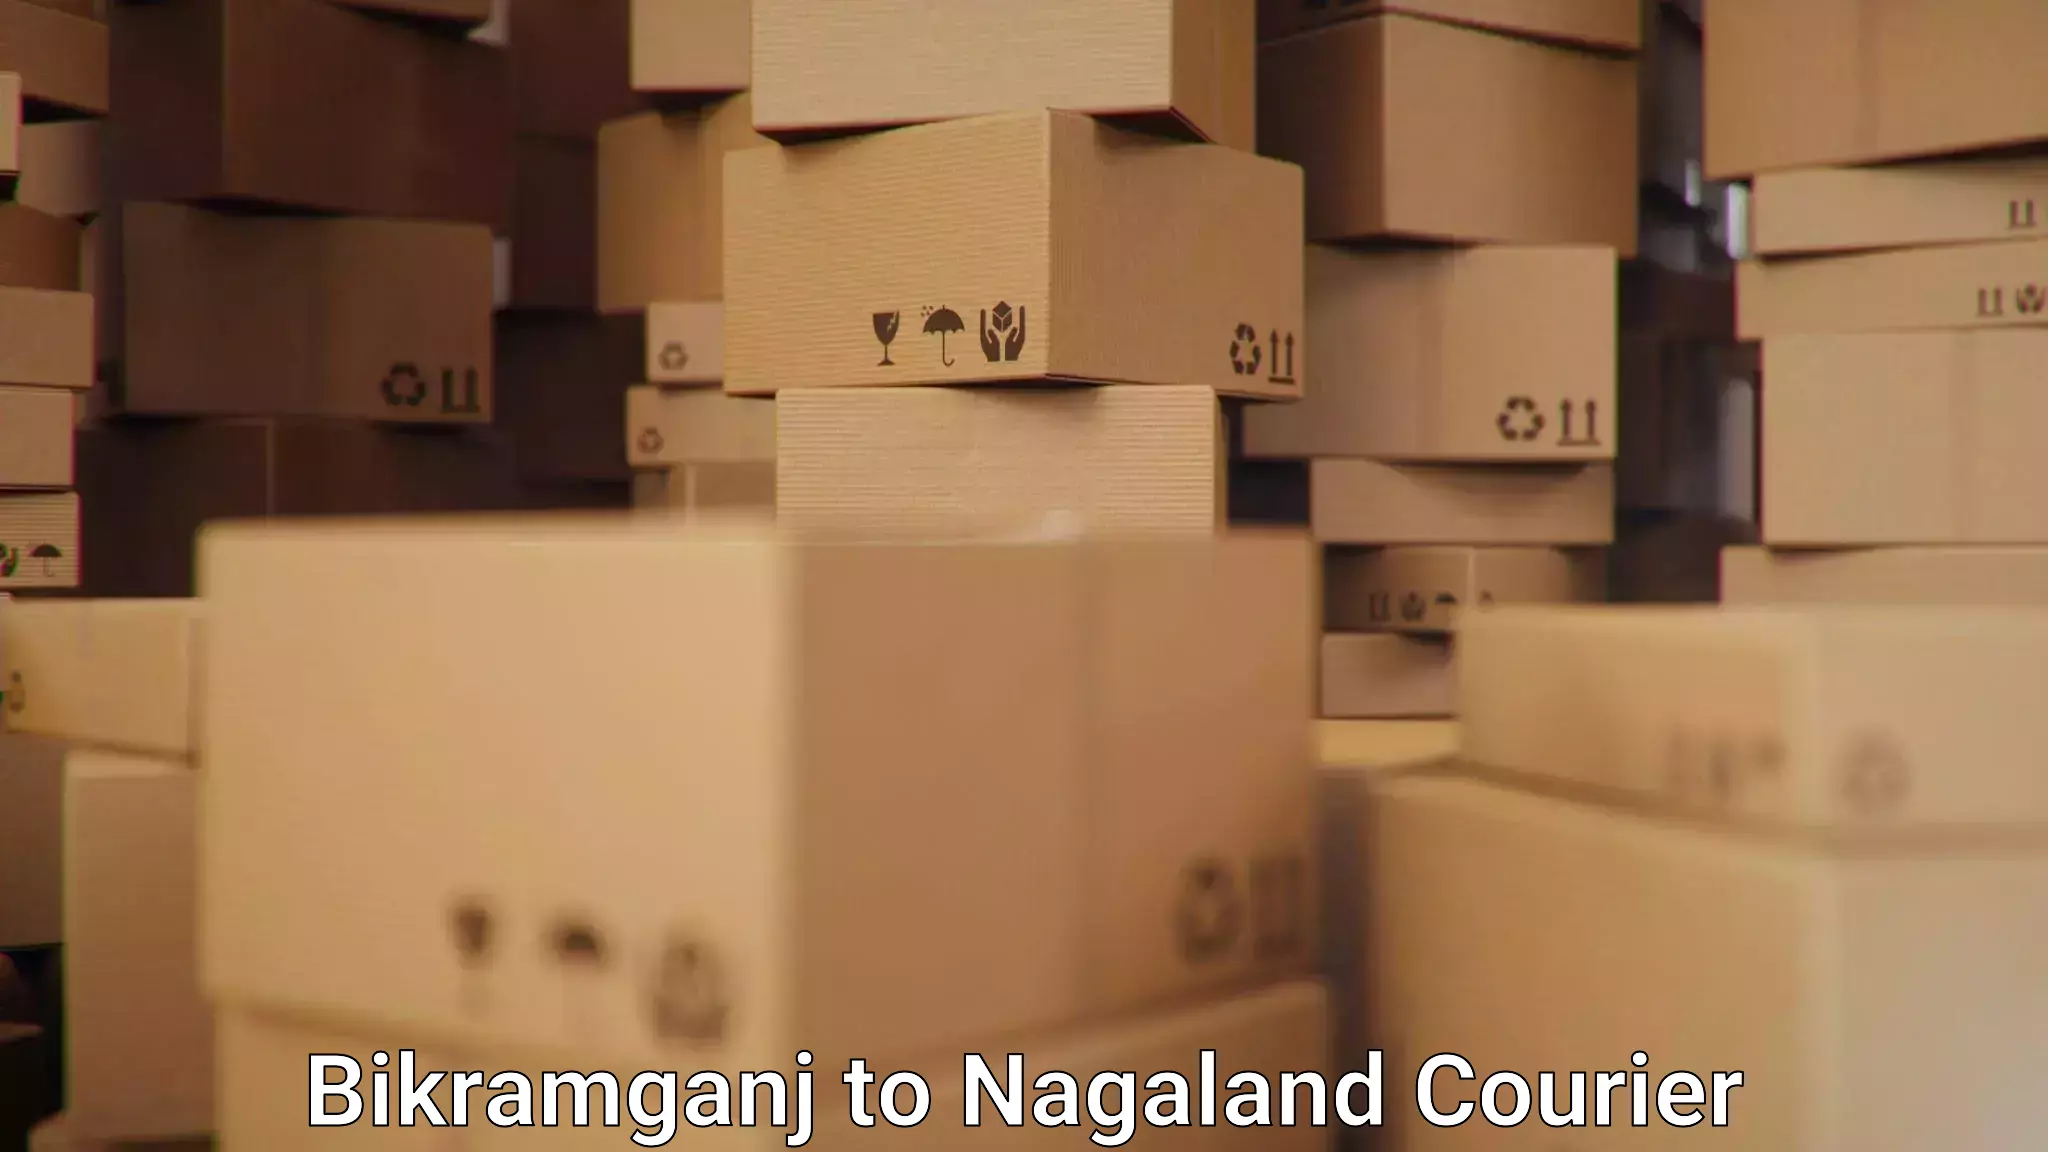 Affordable parcel service Bikramganj to Nagaland